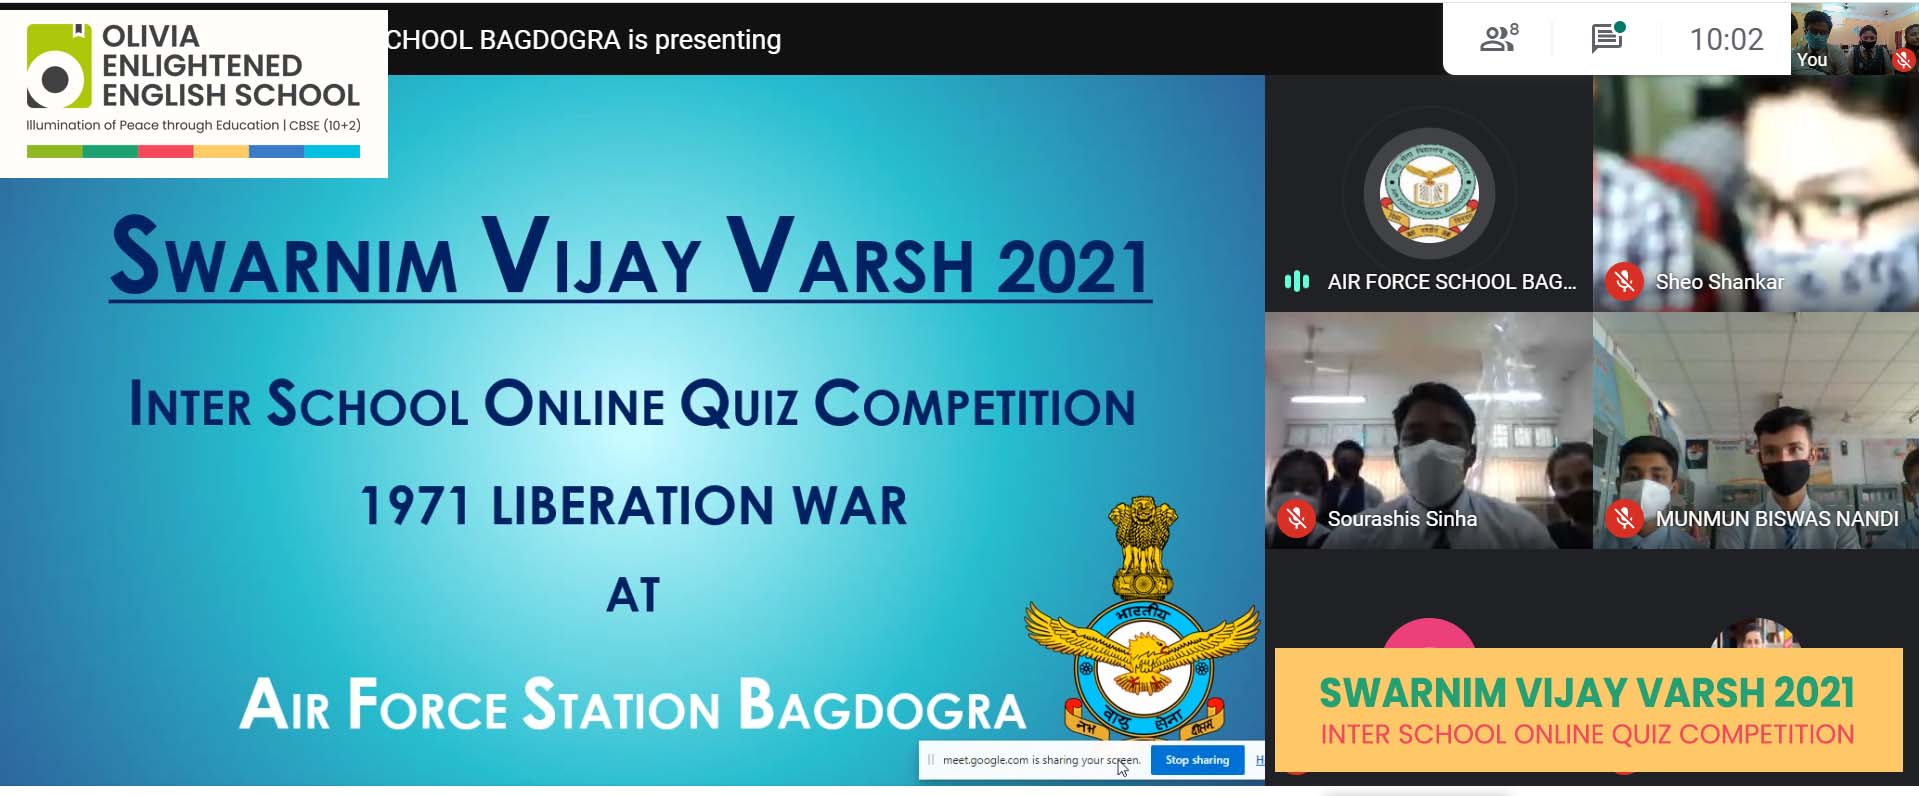 Interschool Quiz competion held online organised by Airforce Station Bagdogra School# 2021